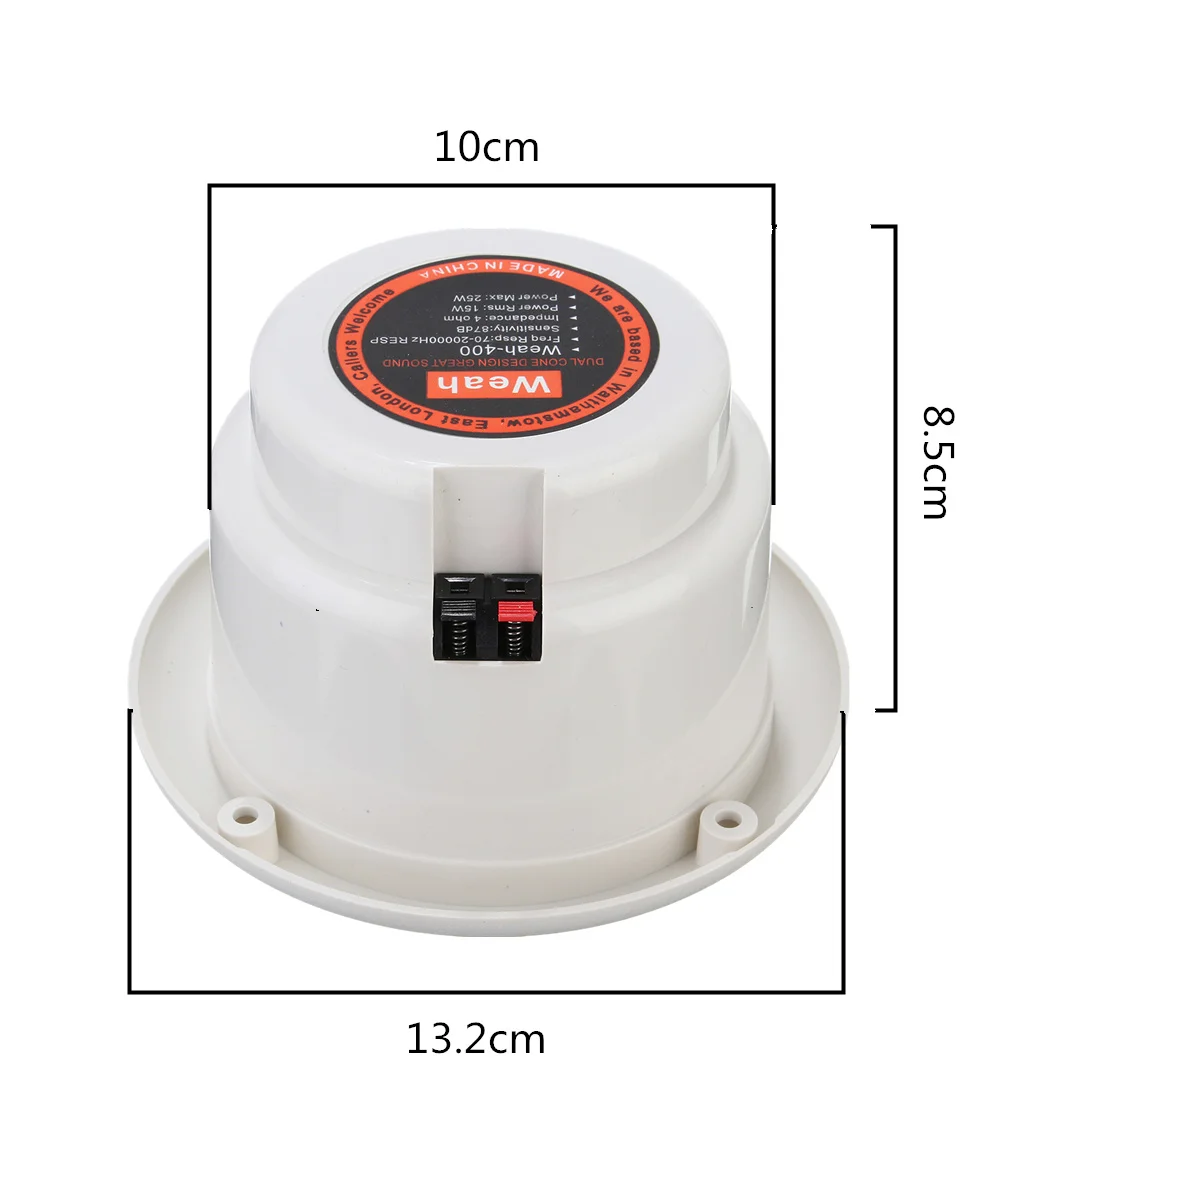 LEORY New 1 Pair Speaker Loudspeakers Waterproof Marine Boat Ceiling Wall Speakers Kitchen Bathroom Water Resistant images - 6